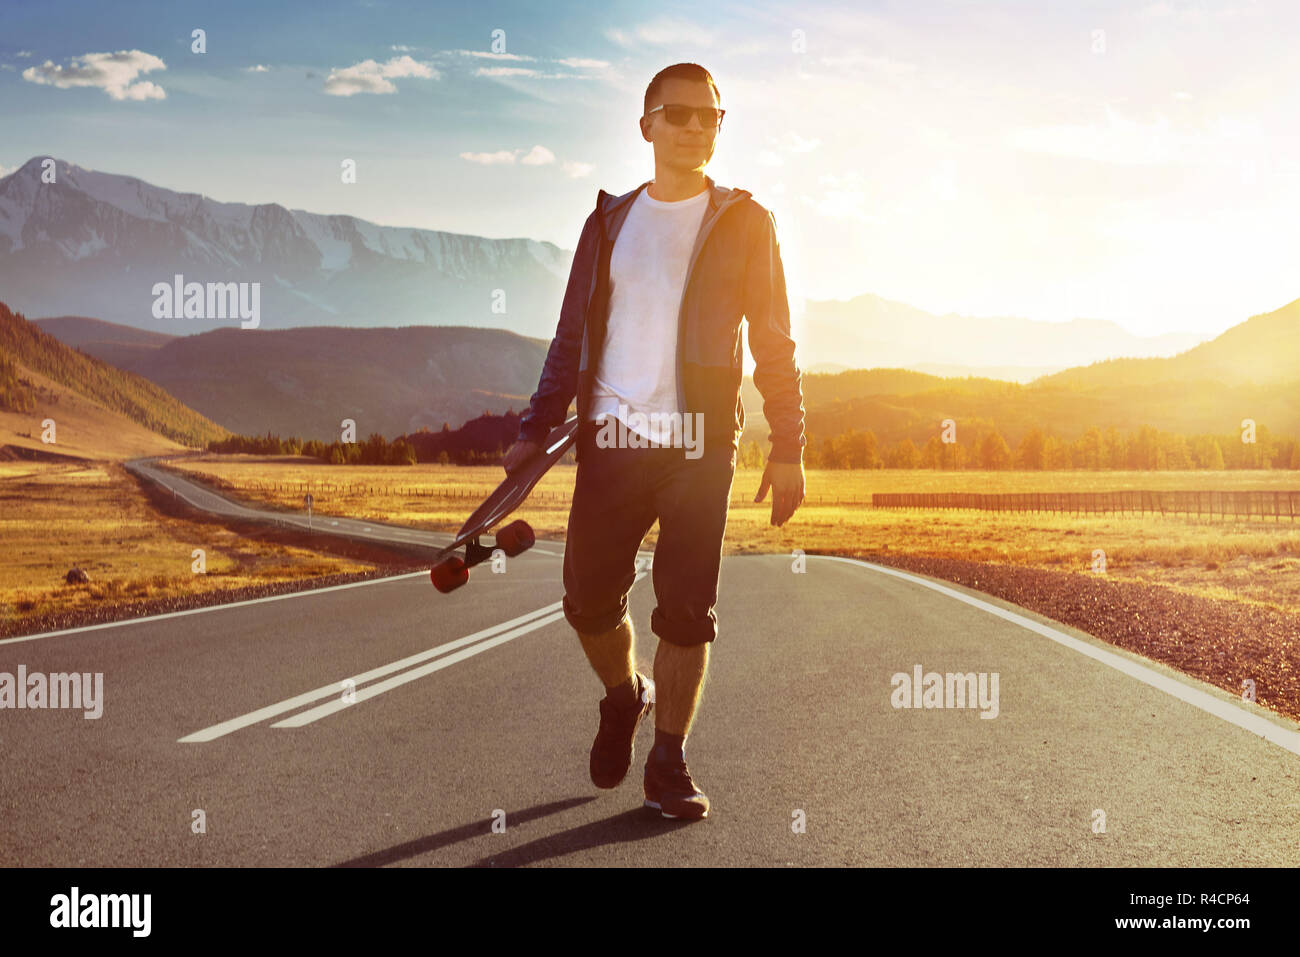 Glücklicher Mensch skater Spaziergänge mit Longboard durch Sonnenuntergang Mountain Road. Eislaufen oder longboarden Konzept Stockfoto